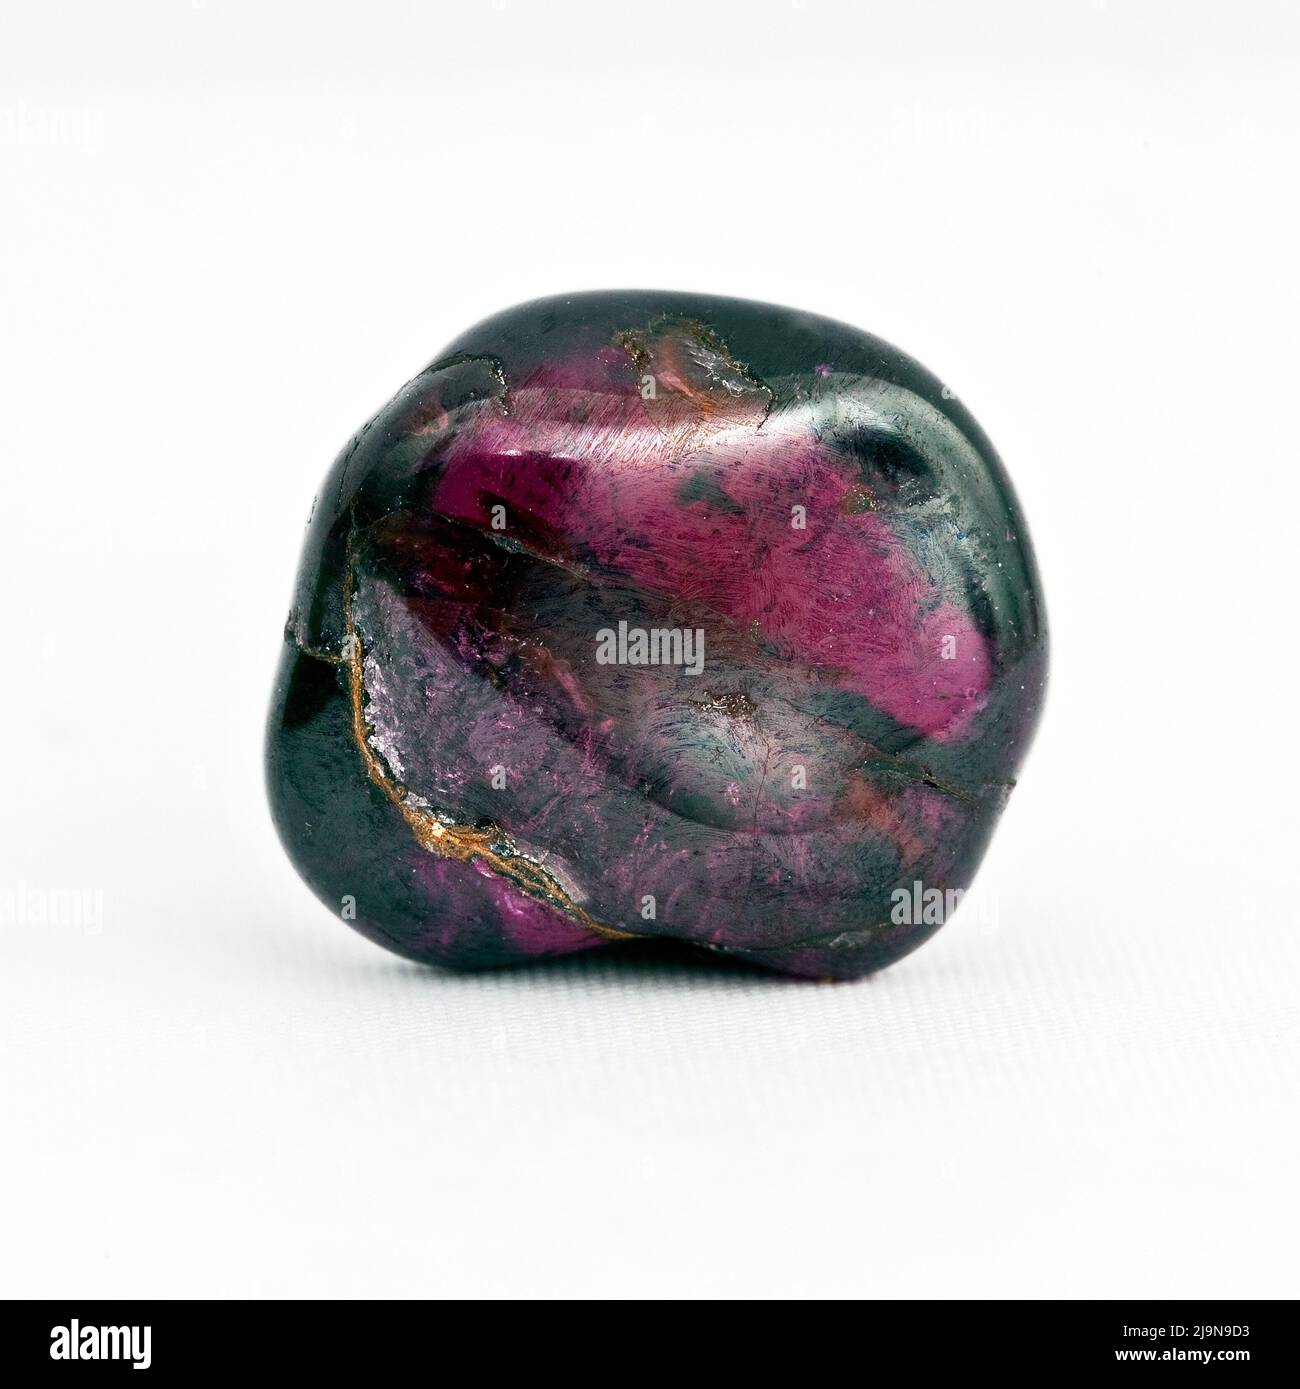 Macro primer plano fotografía en color de un 'Garnet' pulido Una piedra preciosa semi-cristal utilizada en la terapia de curación de cristales Foto de stock